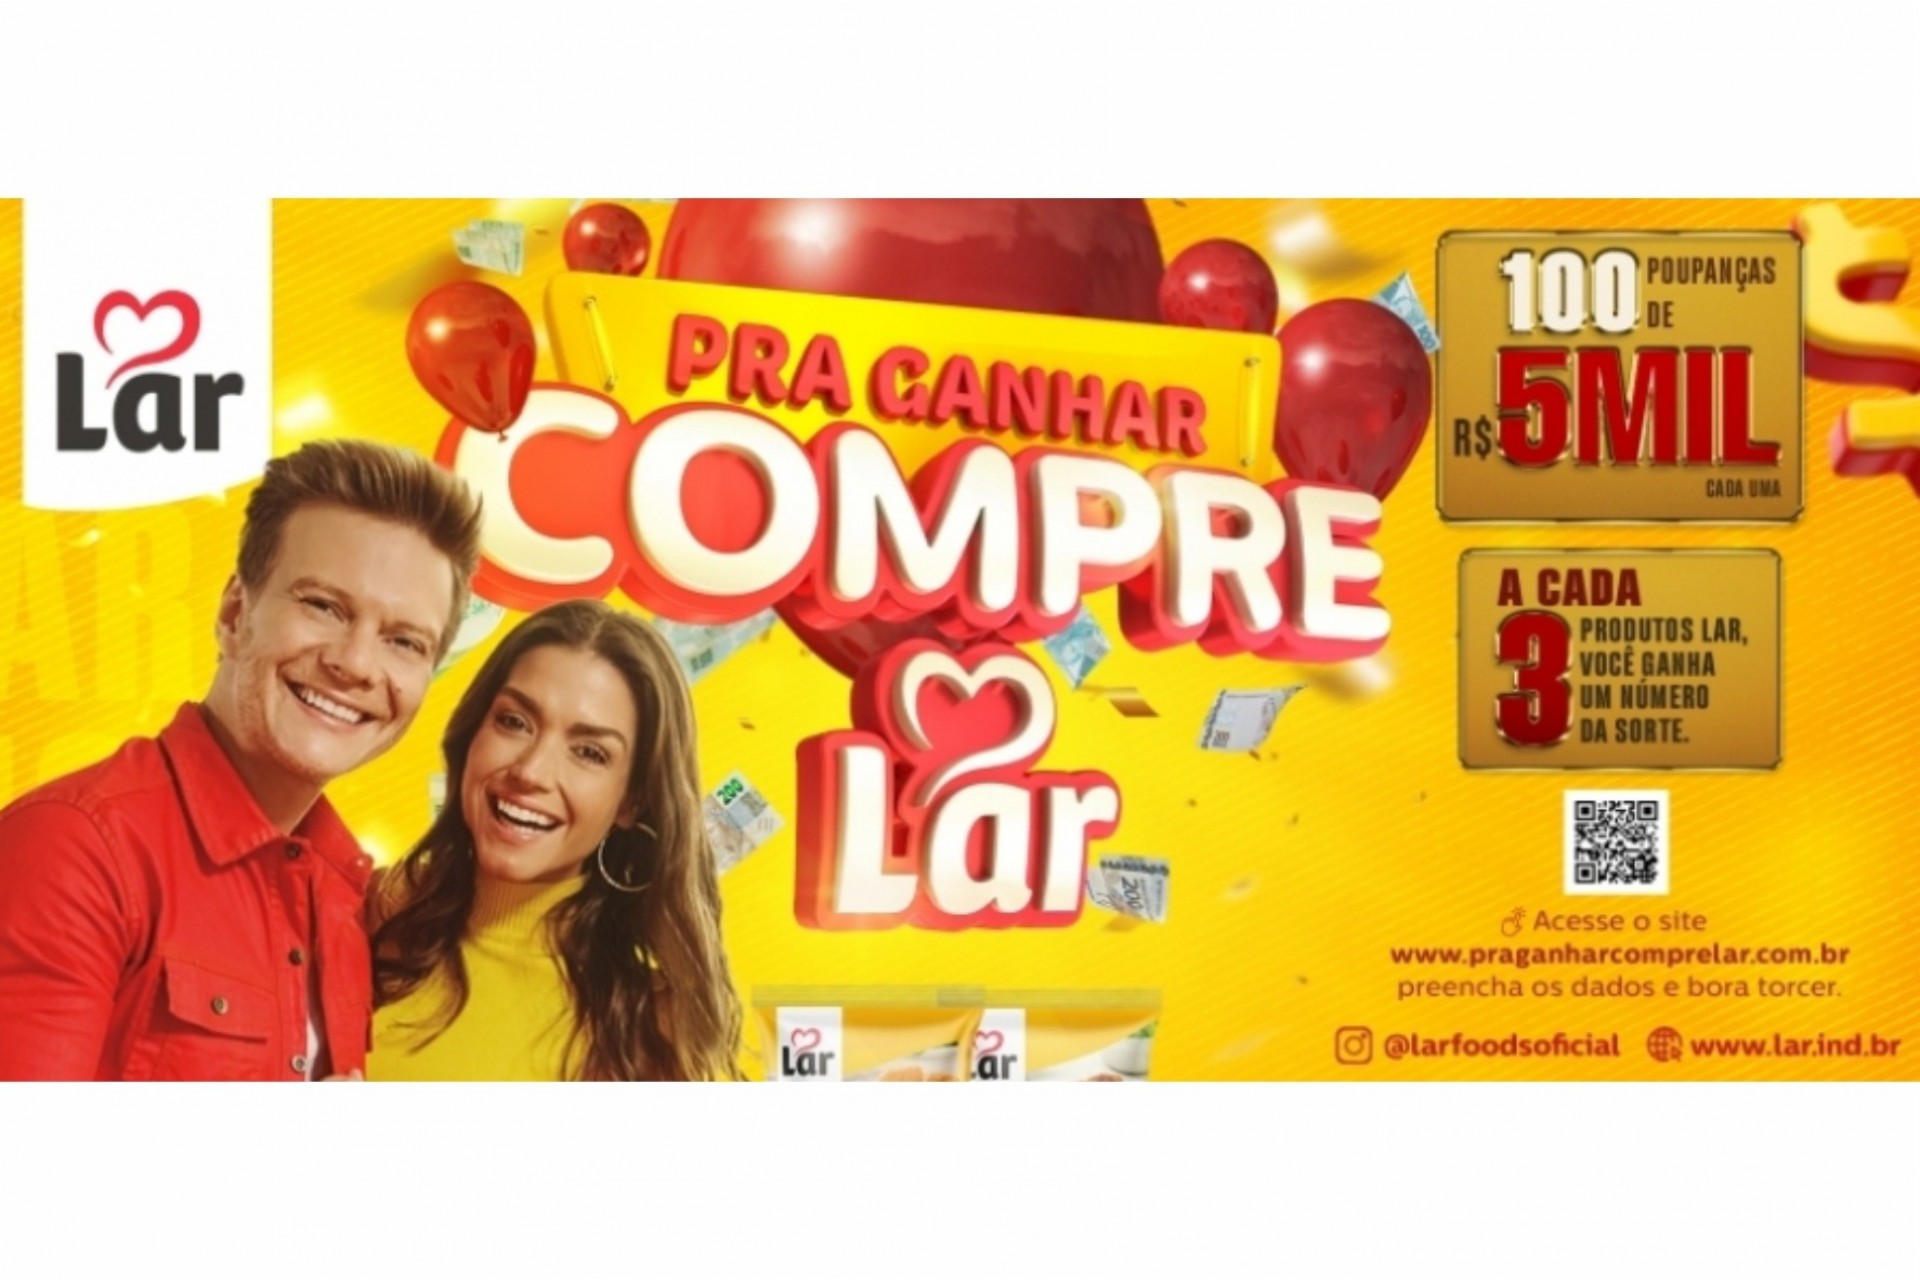 Lar lança campanha de vendas e sorteio de meio milhão de reais em prêmios -  Pra ganhar compre Lar -